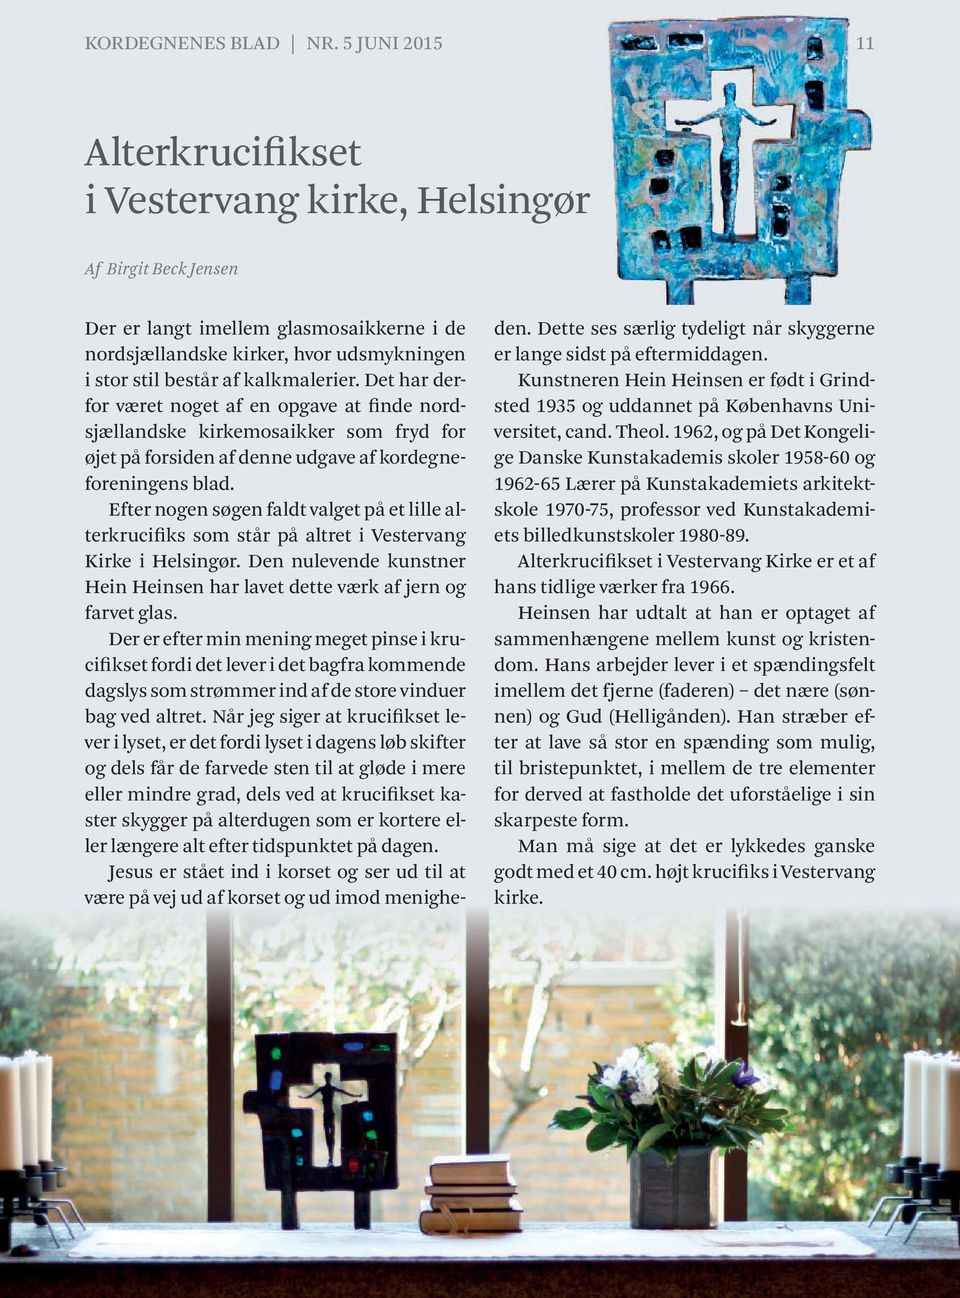 kalkmalerier. Det har derfor været noget af en opgave at finde nordsjællandske kirkemosaikker som fryd for øjet på forsiden af denne udgave af kordegneforeningens blad.